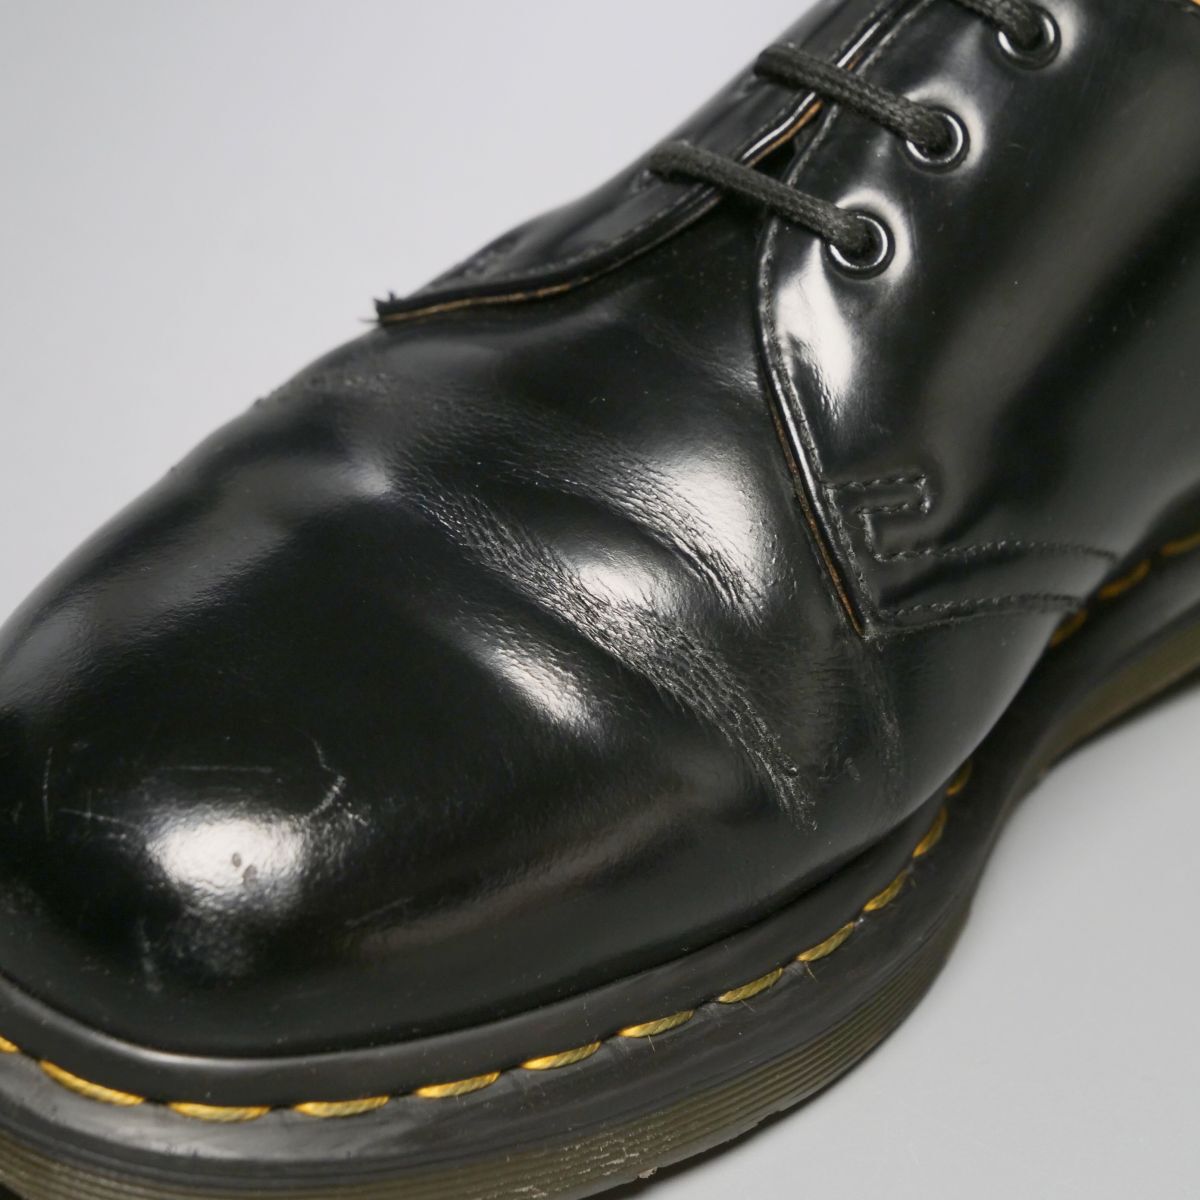 GP4122//*ドクターマーチン/Dr.Martens*1461 59/UK8/プレーントゥ/3ホールシューズ/レザーシューズ/革靴/黒/ブラックの画像6